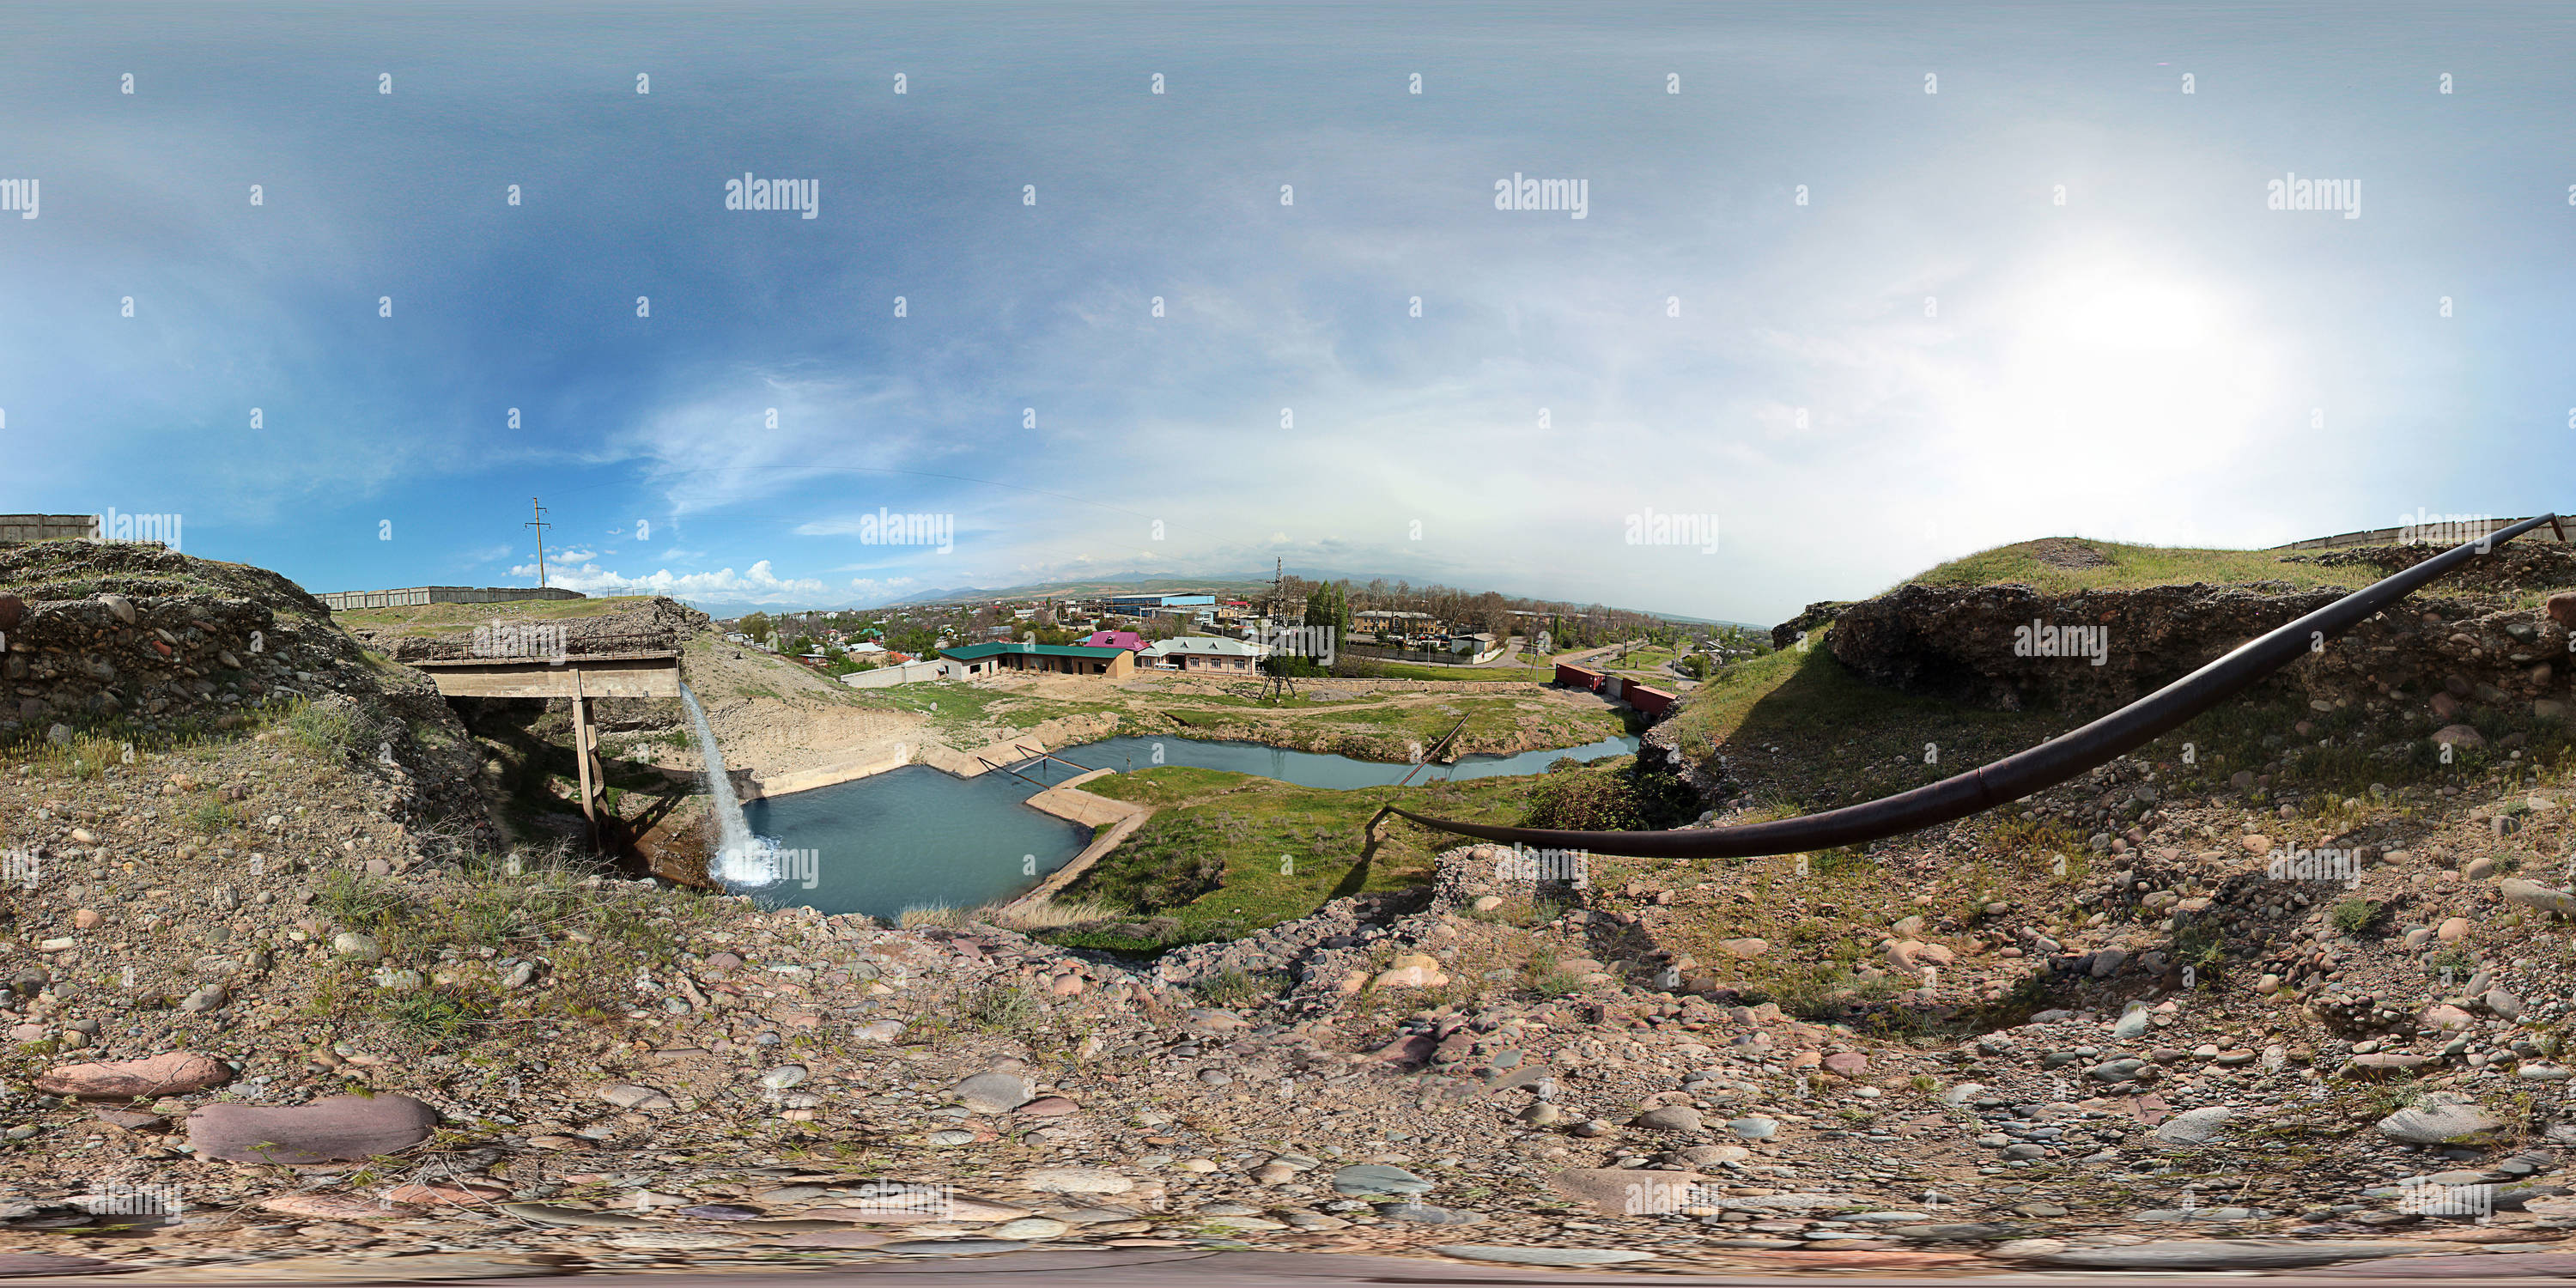 Vista panorámica en 360 grados de Cascada artificial en el Lesosklad.